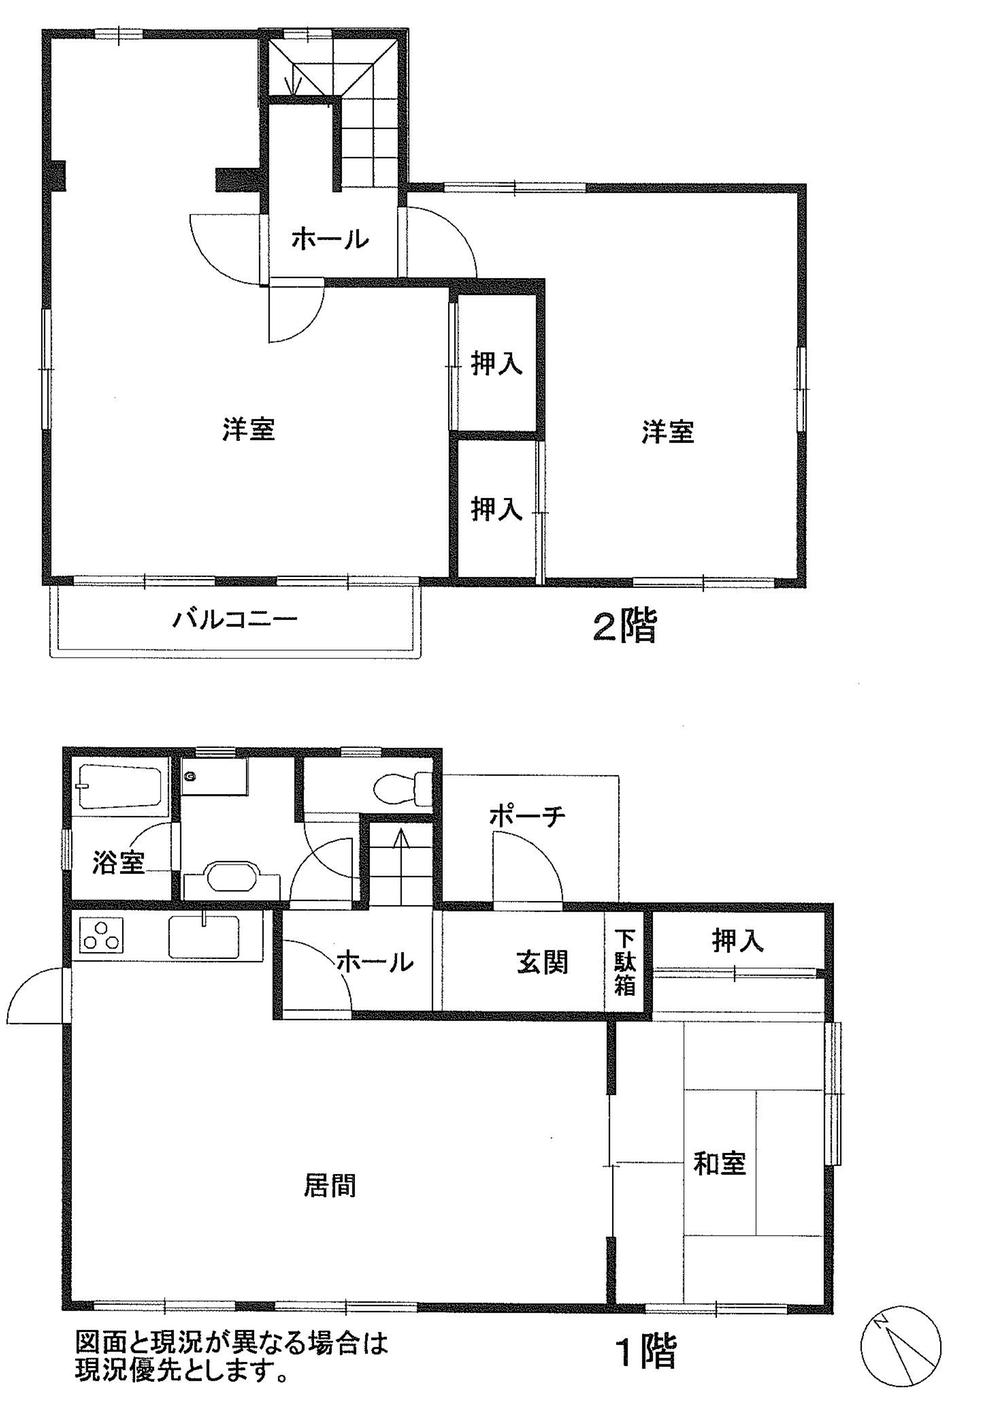 Floor plan. 8.7 million yen, 3LDK, Land area 198.14 sq m , Building area 107.68 sq m